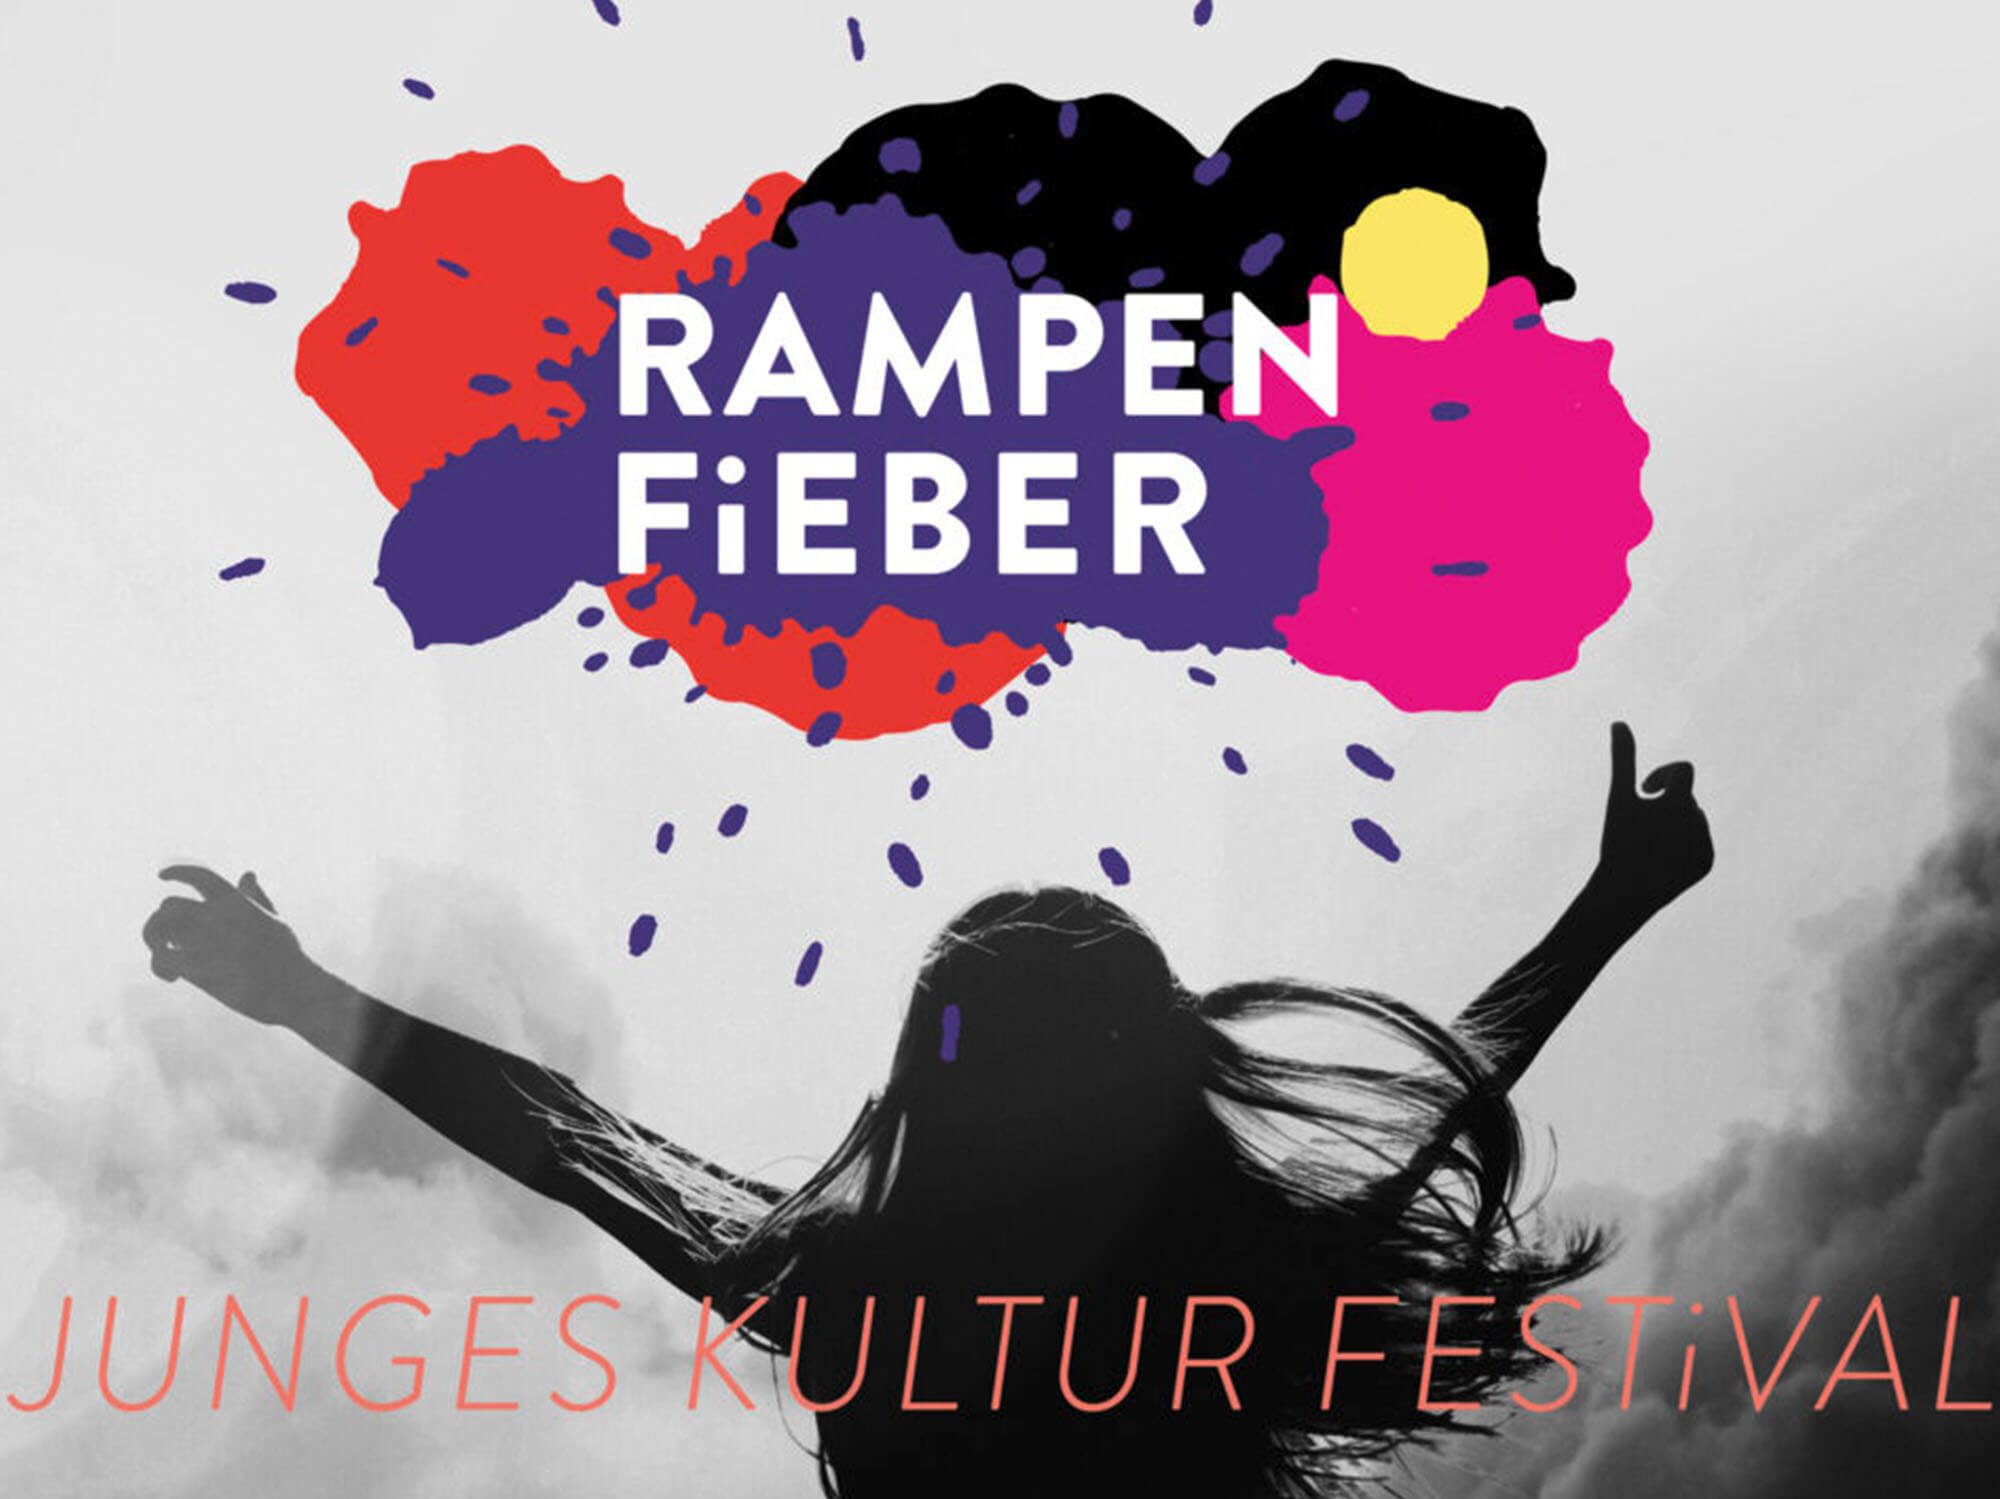 Das Junge Kulturfestival Rampenfieber umfasst alle Kunstsparten.